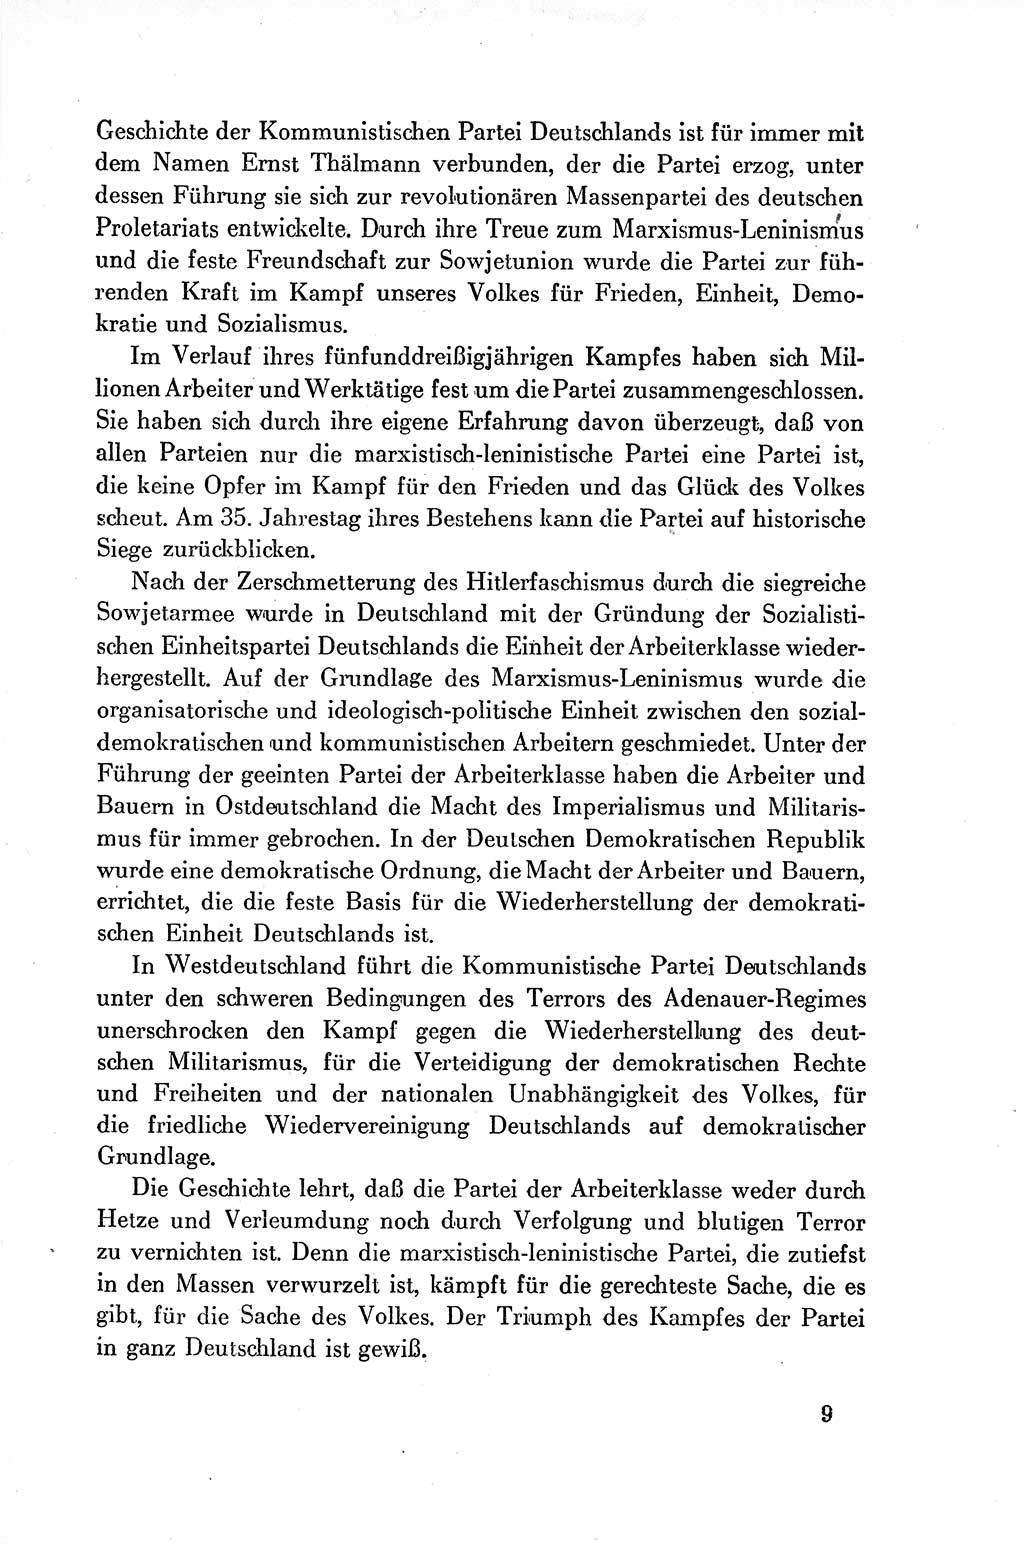 Dokumente der Sozialistischen Einheitspartei Deutschlands (SED) [Deutsche Demokratische Republik (DDR)] 1954-1955, Seite 9 (Dok. SED DDR 1954-1955, S. 9)